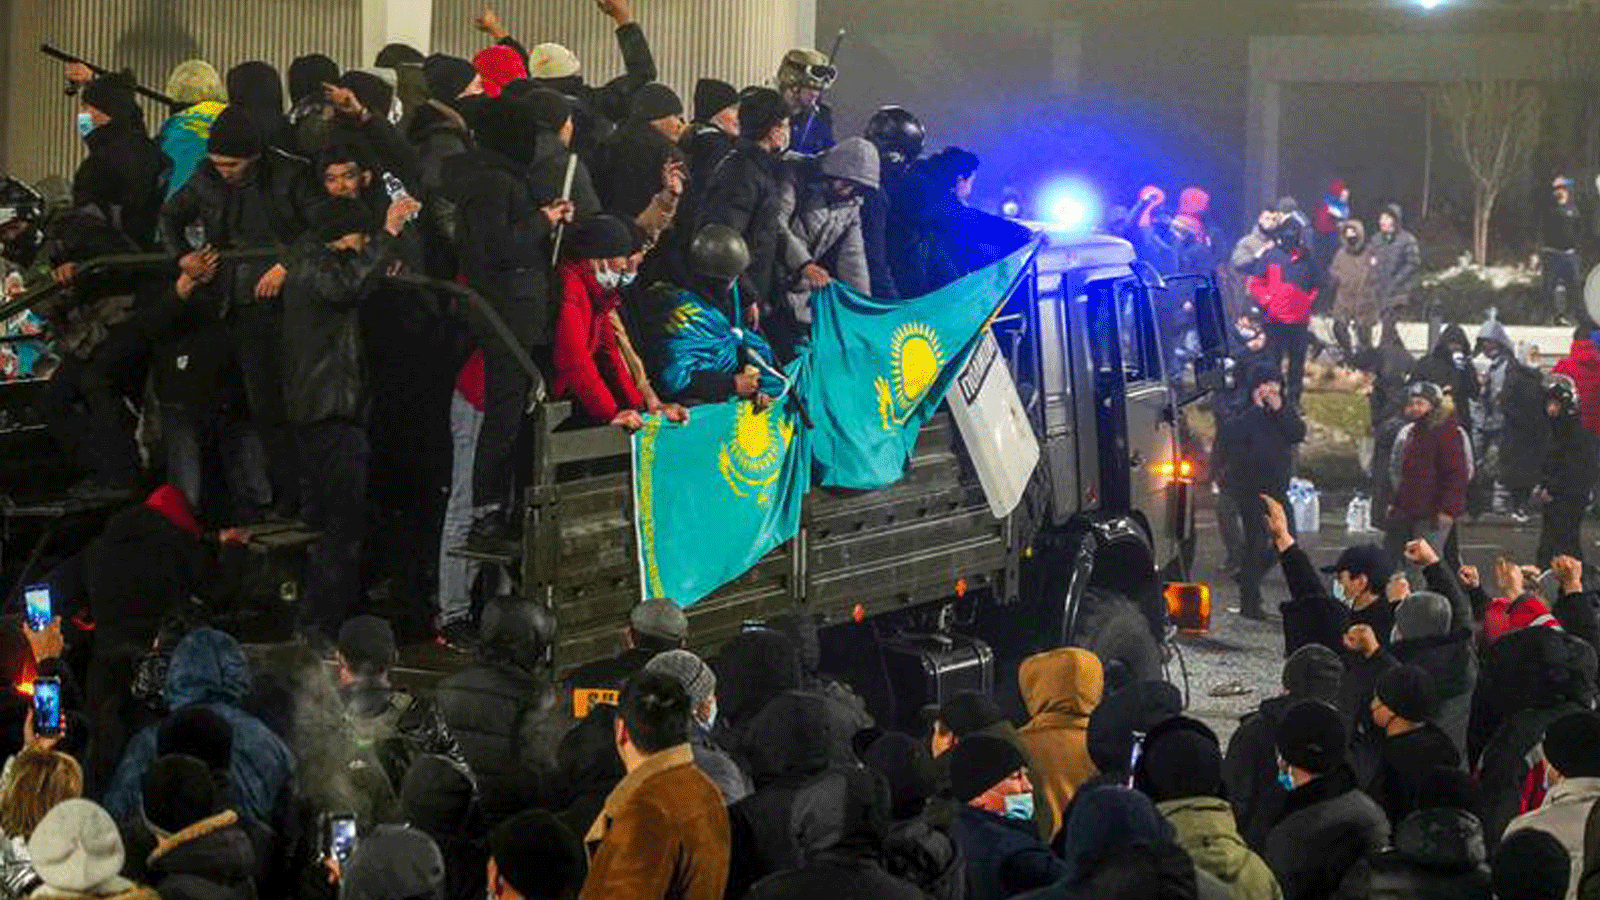 حالة الشغب مستمرة في كازاخستان التي أعلنت حالة الطوارئ على مستوى البلاد بعد اندلاع الاحتجاجات على زيادة أسعار الوقود.